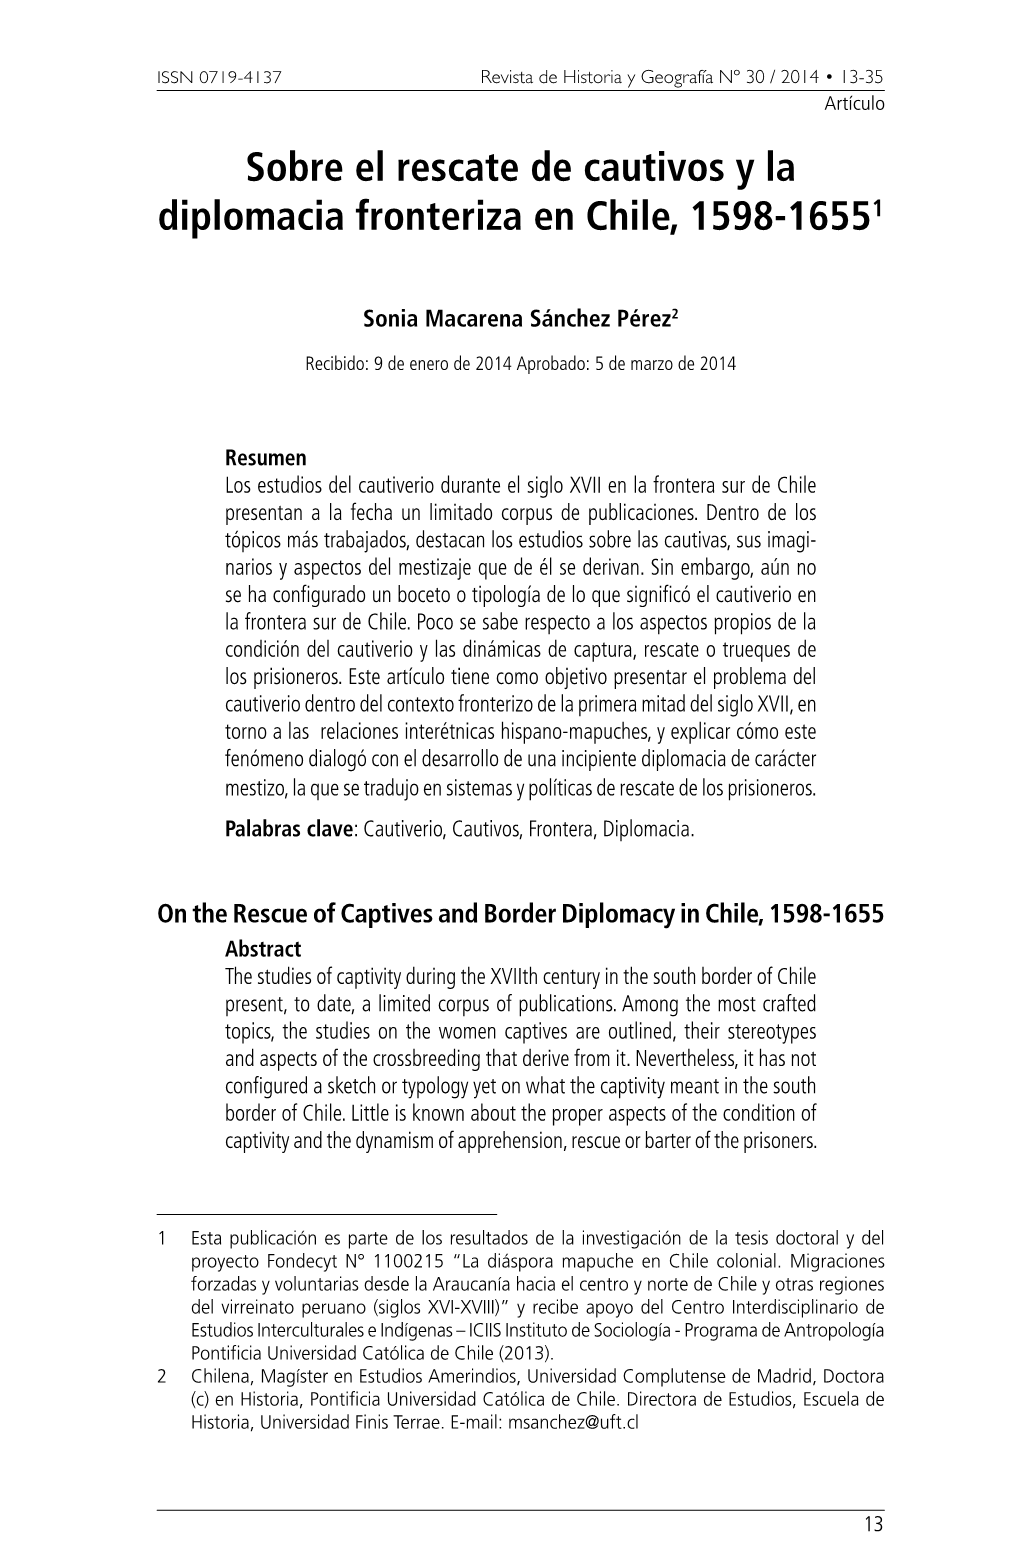 Sobre El Rescate De Cautivos Y La Diplomacia Fronteriza En Chile, 1598-16551